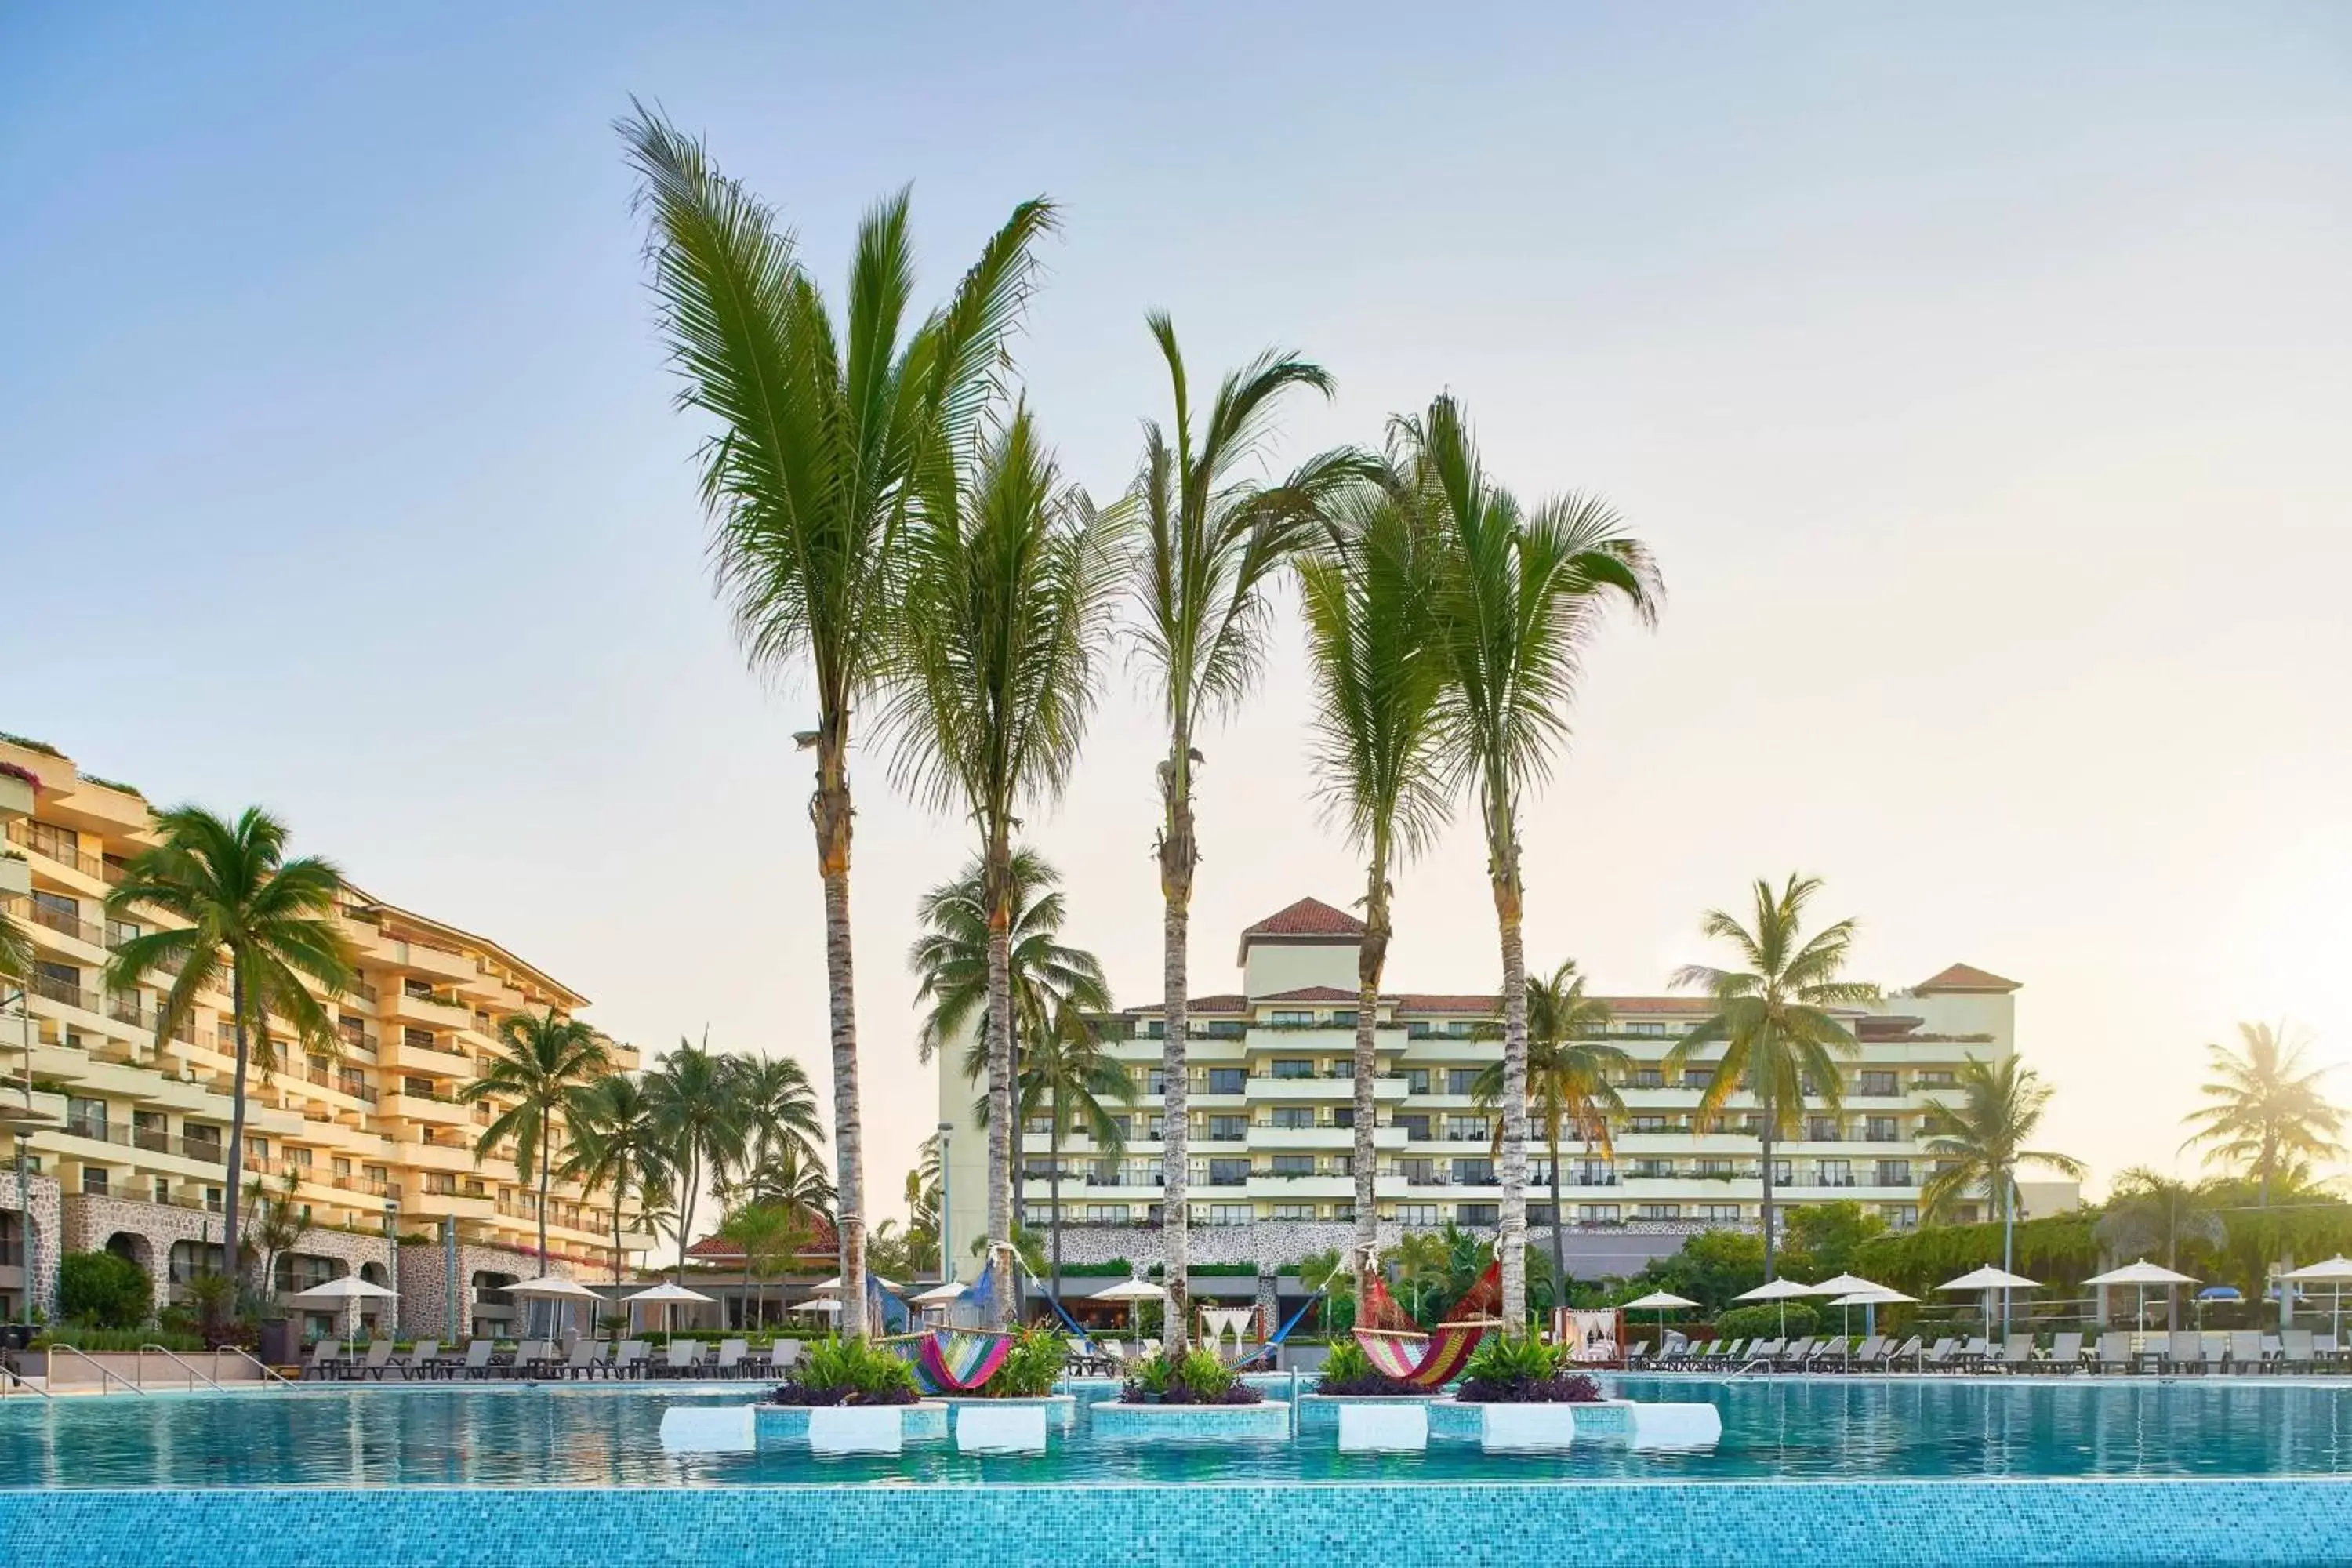 Swimming pool, Property Building in Marriott Puerto Vallarta Resort & Spa